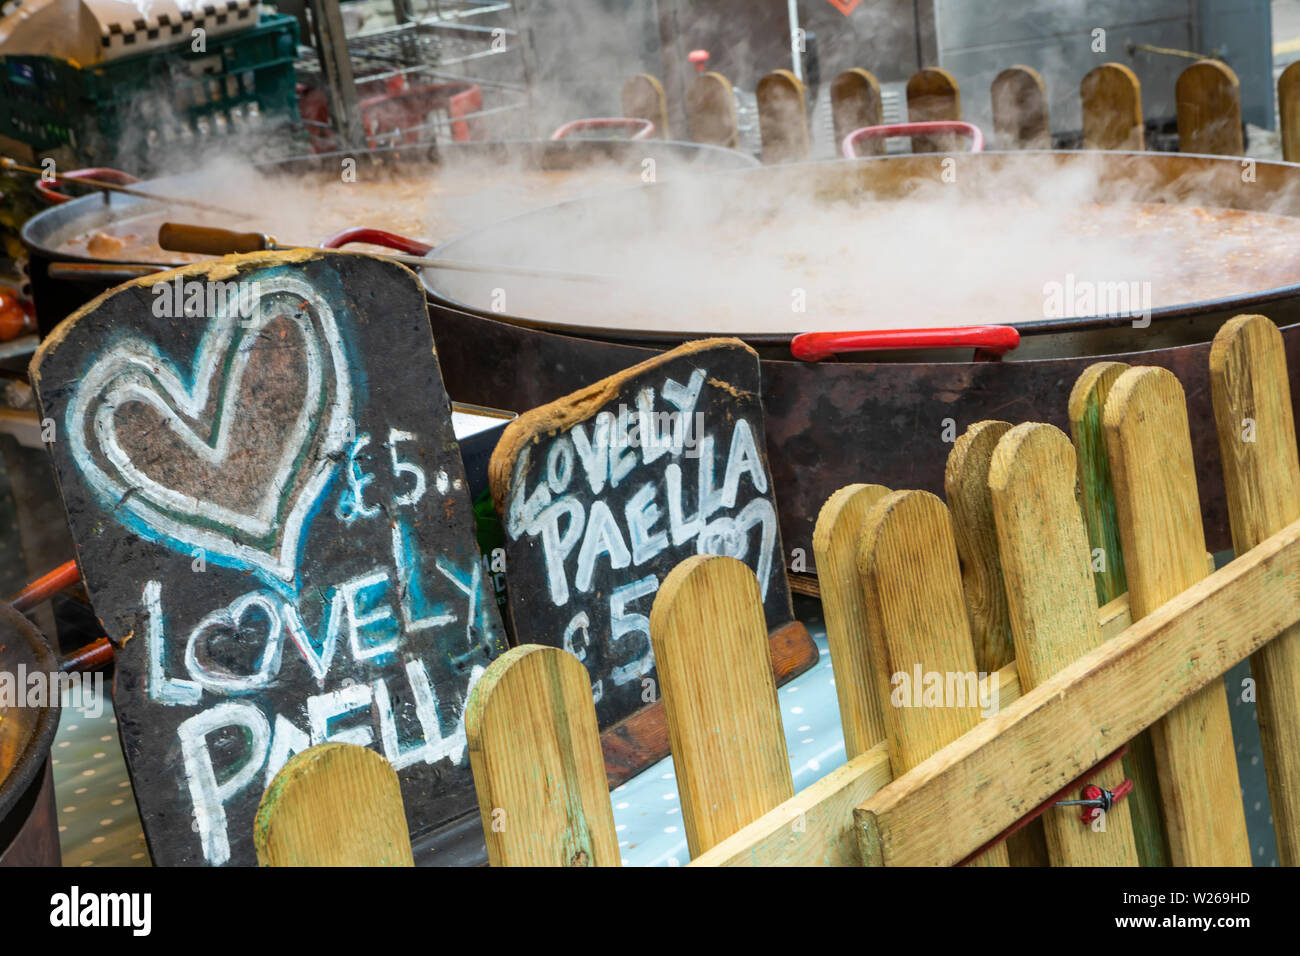 Die Paella ist Kochen in einem großen Gasherd und Dampf blubbert ist Stockfoto